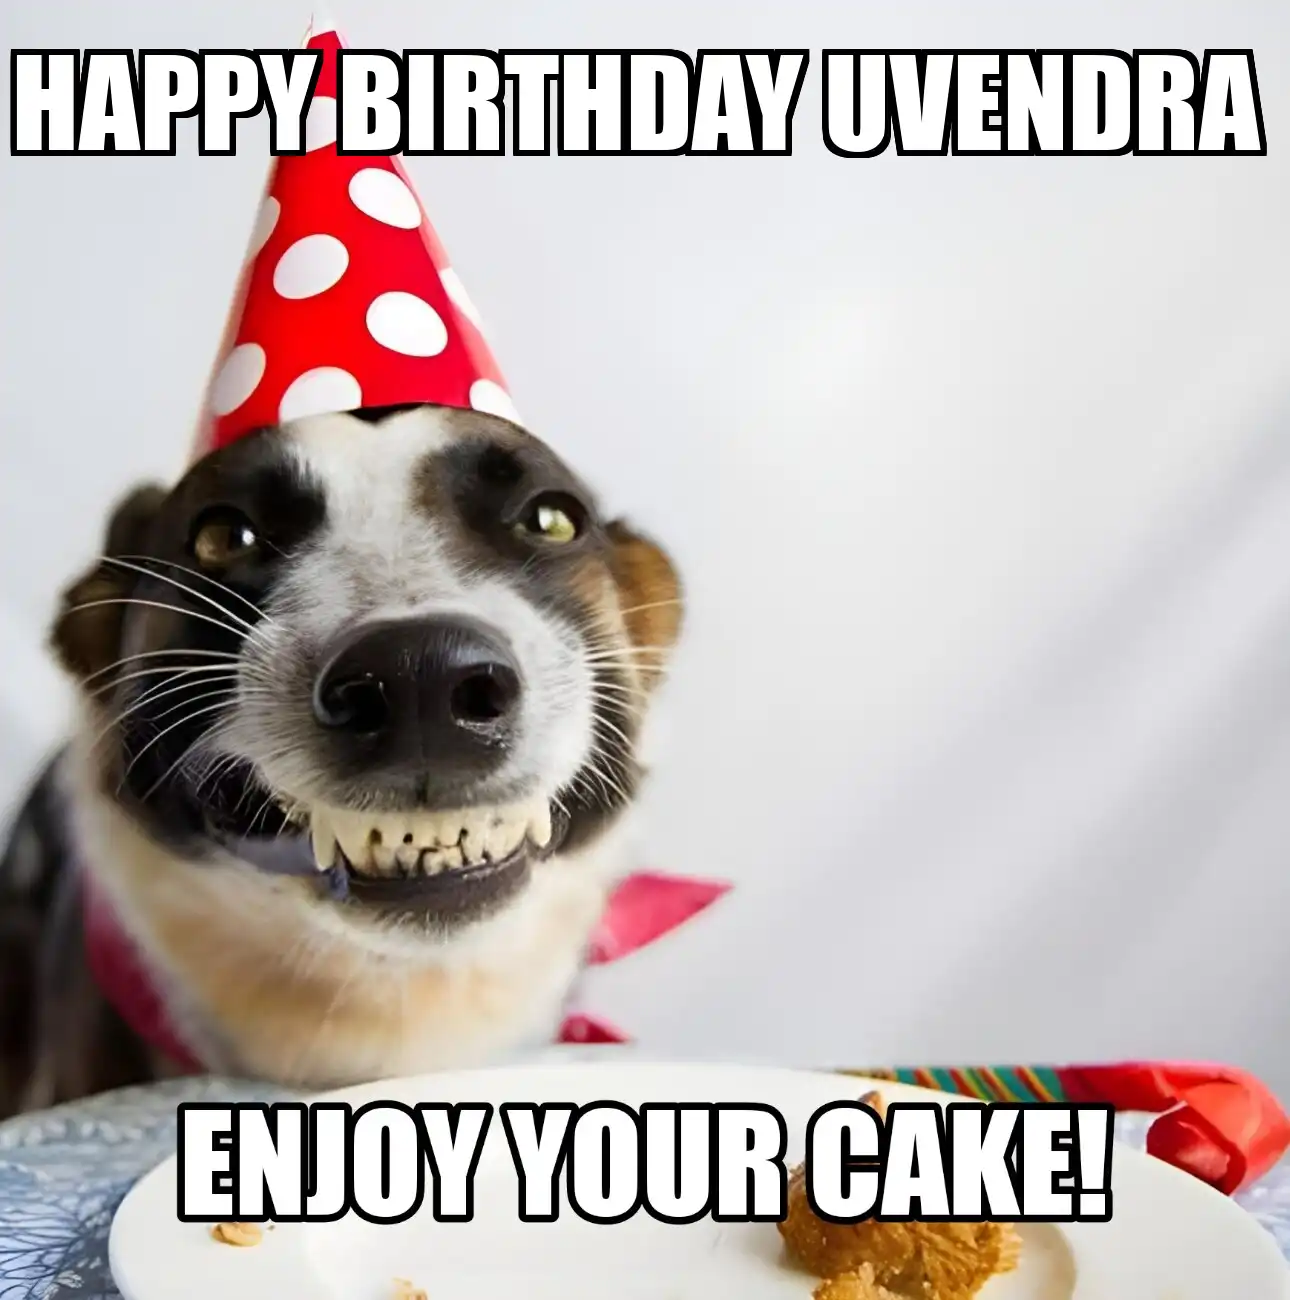 Happy Birthday Uvendra Enjoy Your Cake Dog Meme